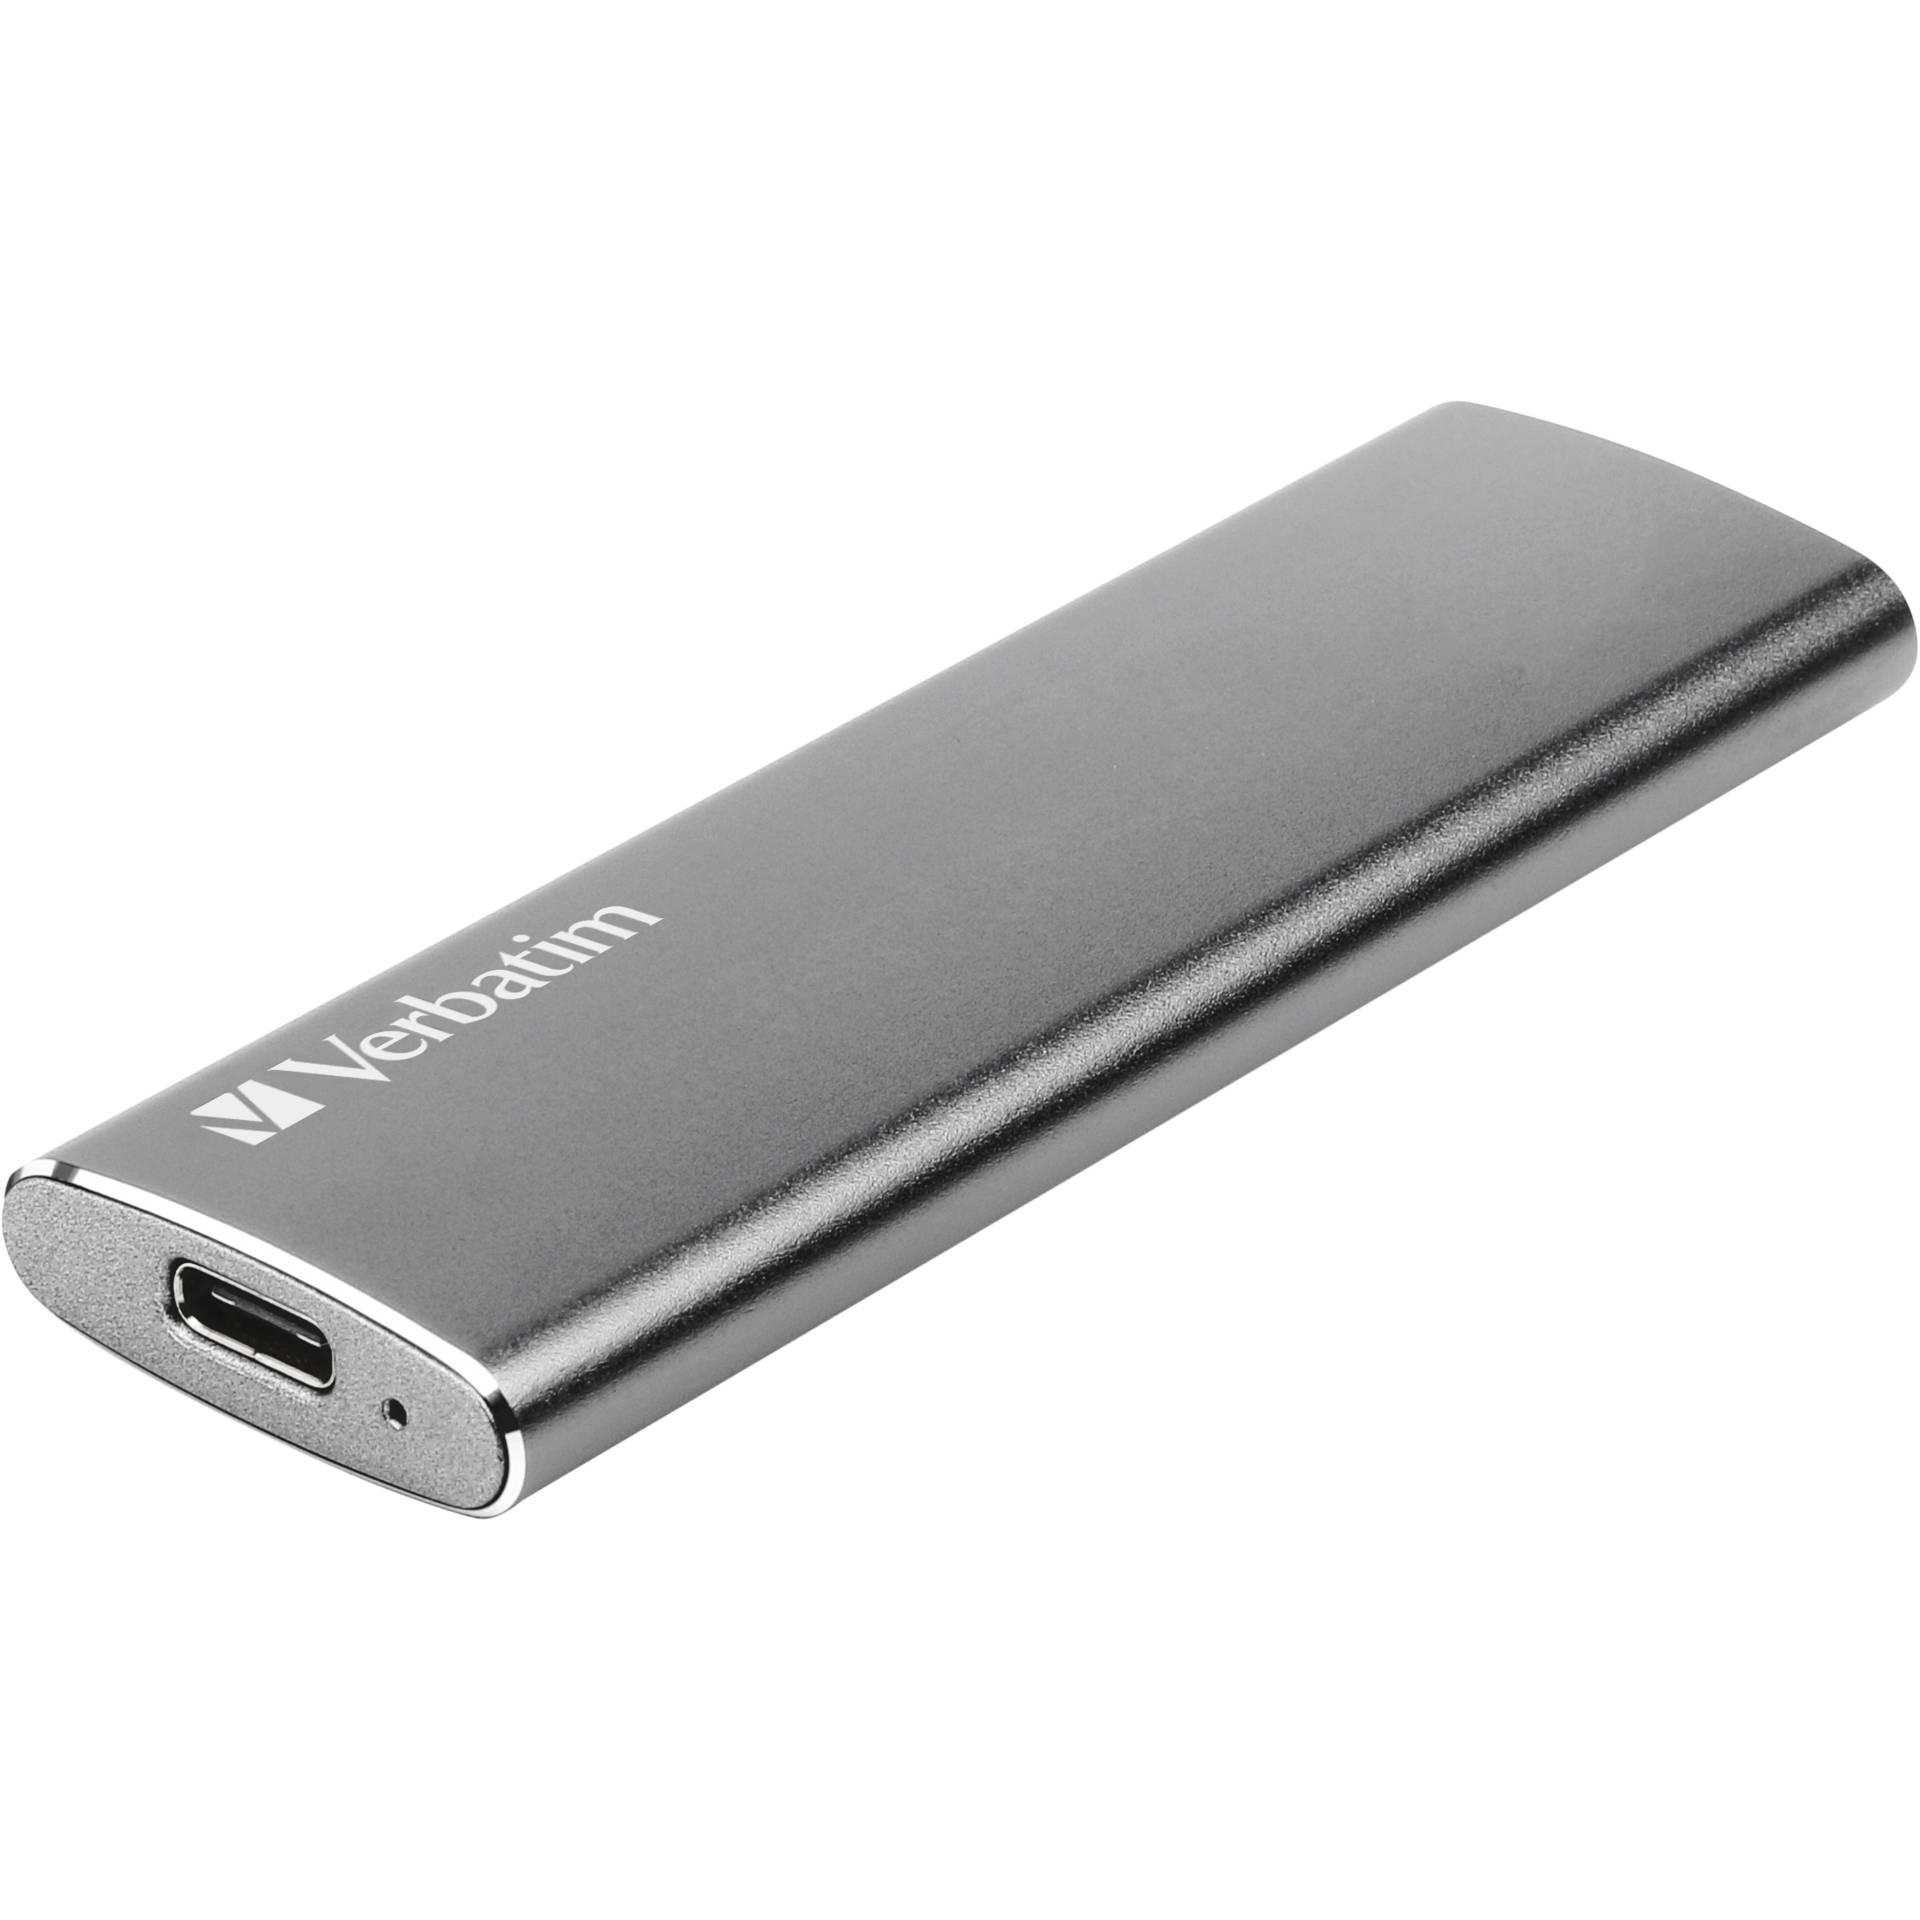 240 GB SSD Verbatim Vx500 External Solid State Drive extern 1x USB-C 3.1